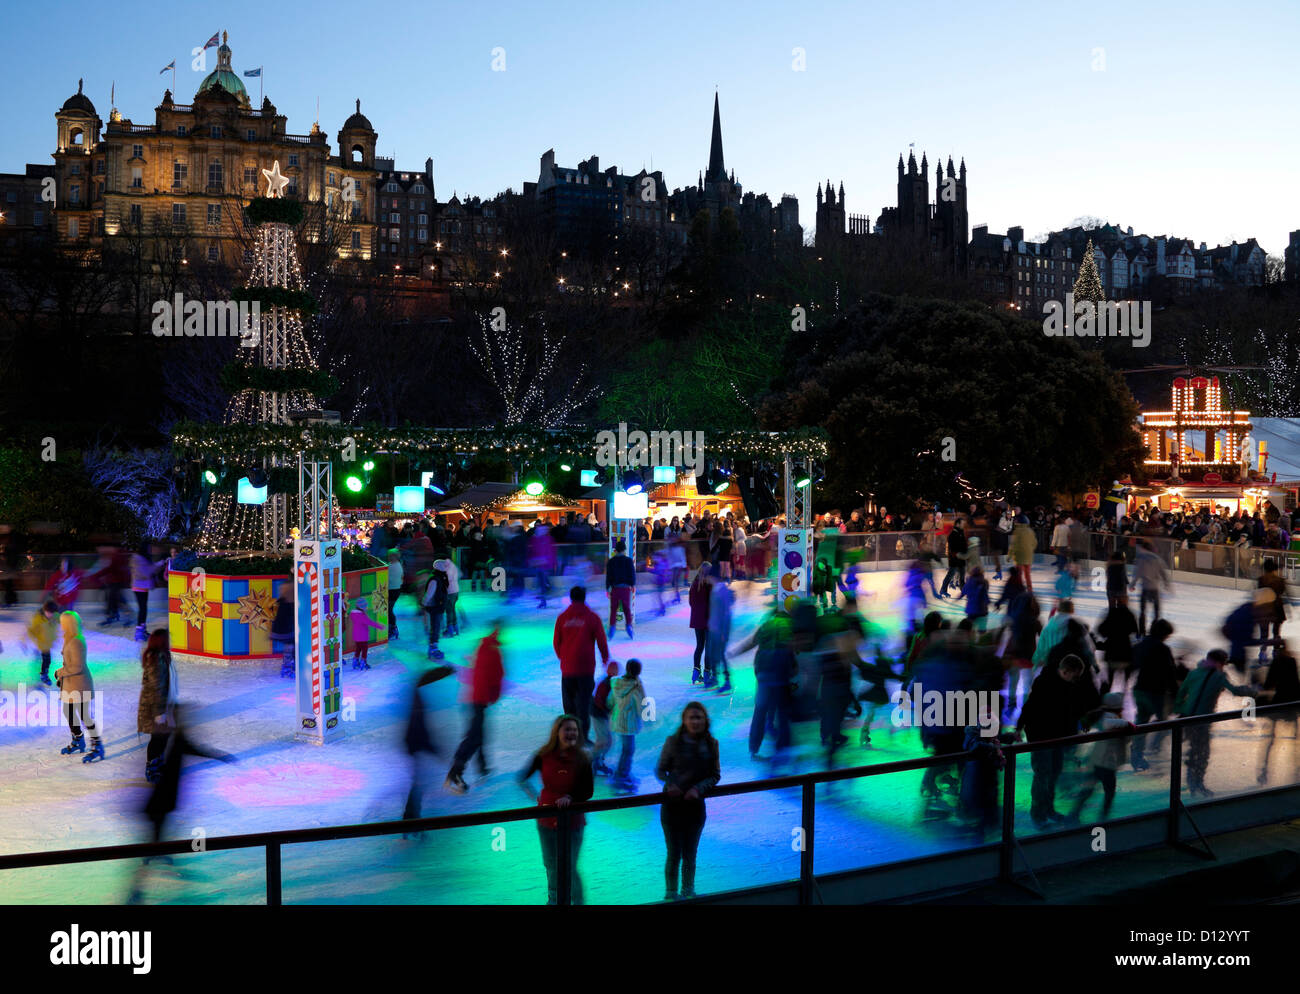 Edinburgh-Weihnachten-Eisbahn, Stadtzentrum, Schottland, UK, Europa Stockfoto